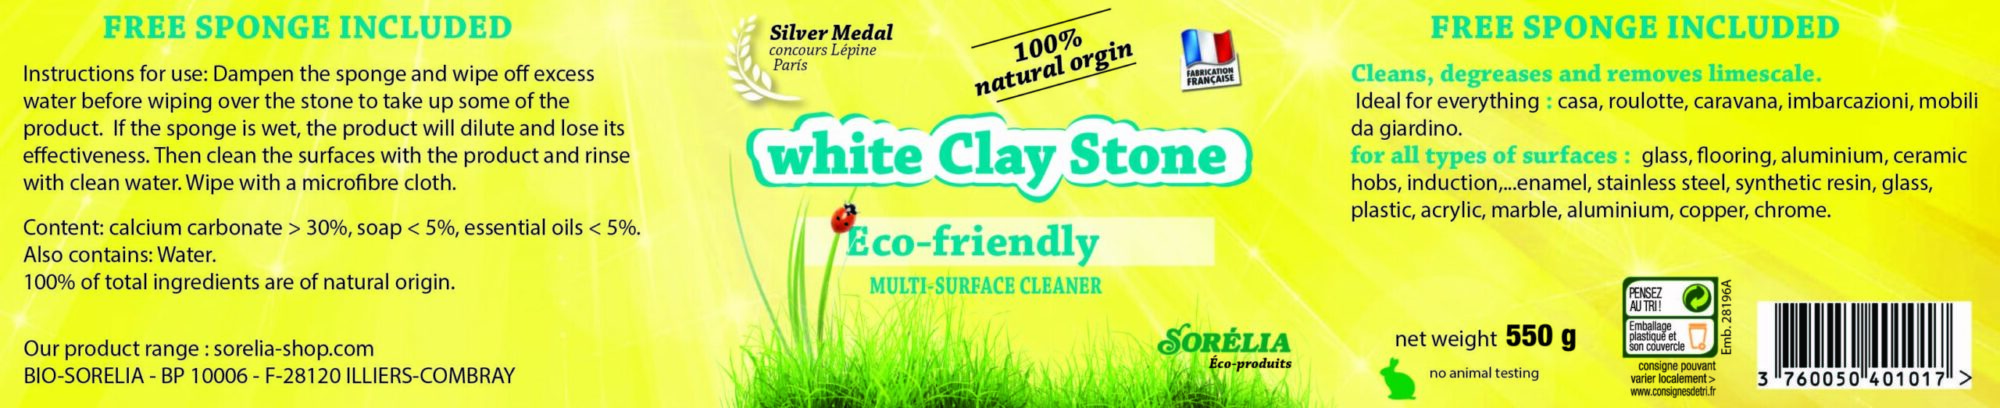 White clay stone